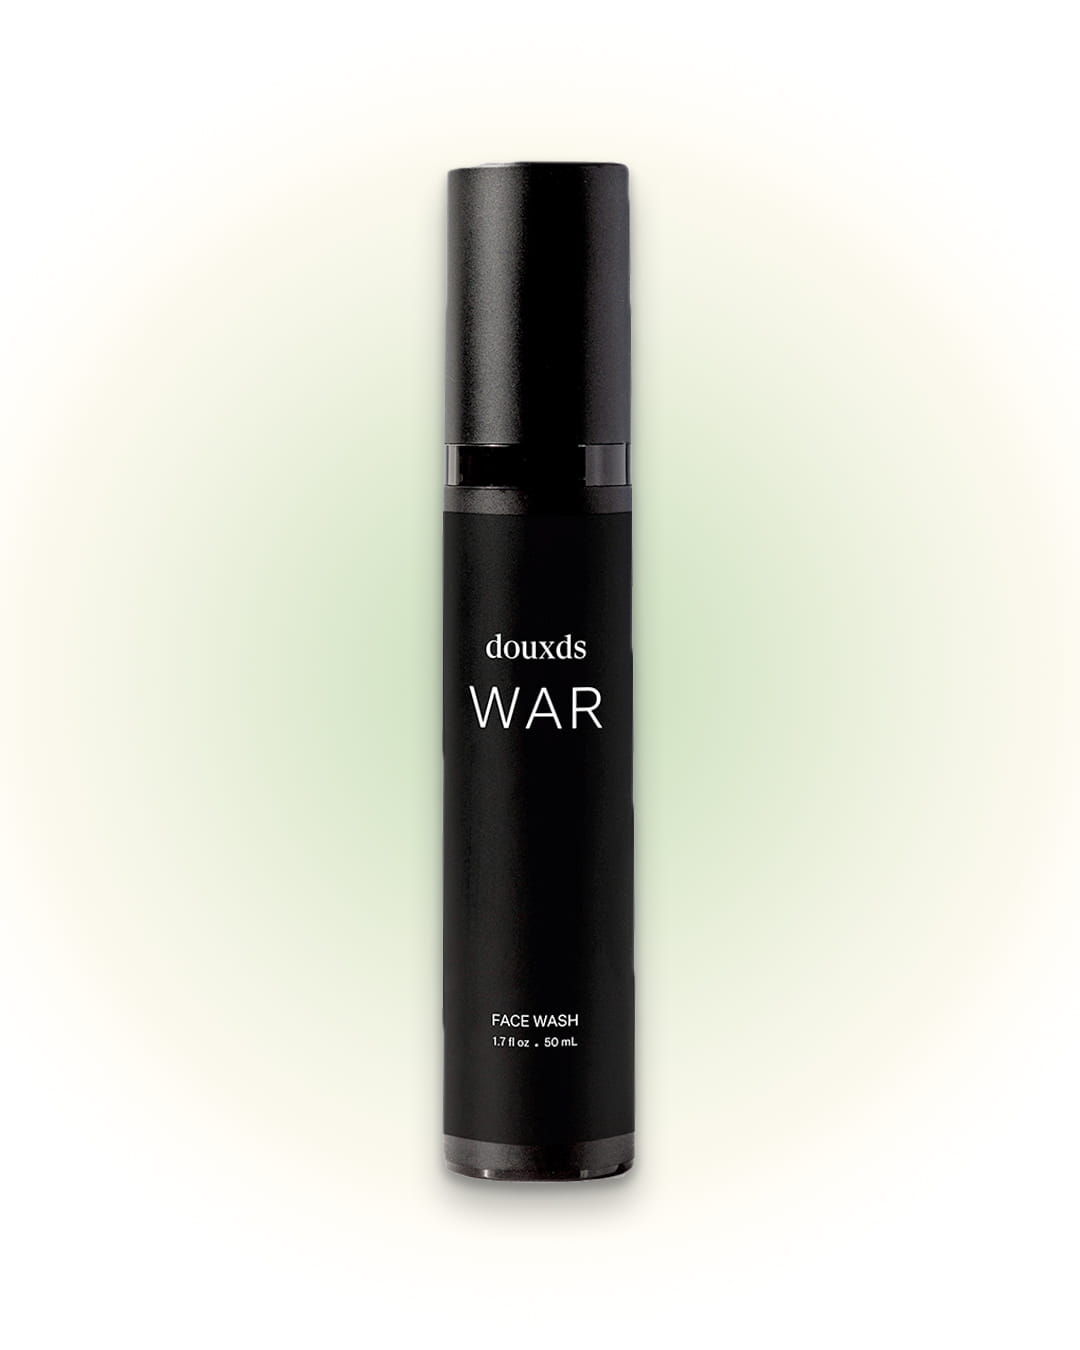 WAR™ Face Wash